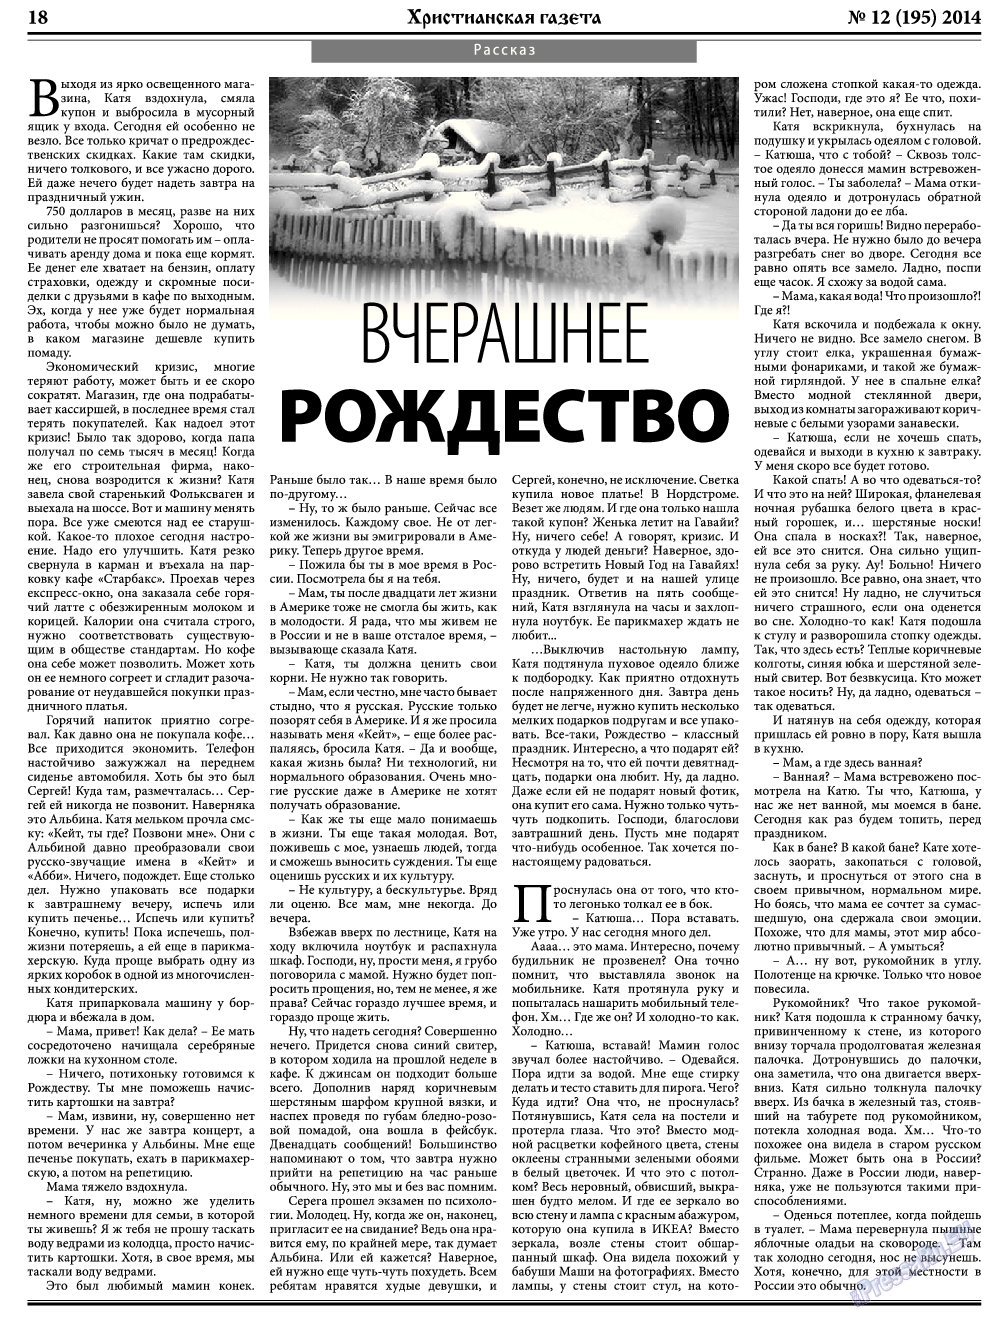 Христианская газета, газета. 2014 №12 стр.26